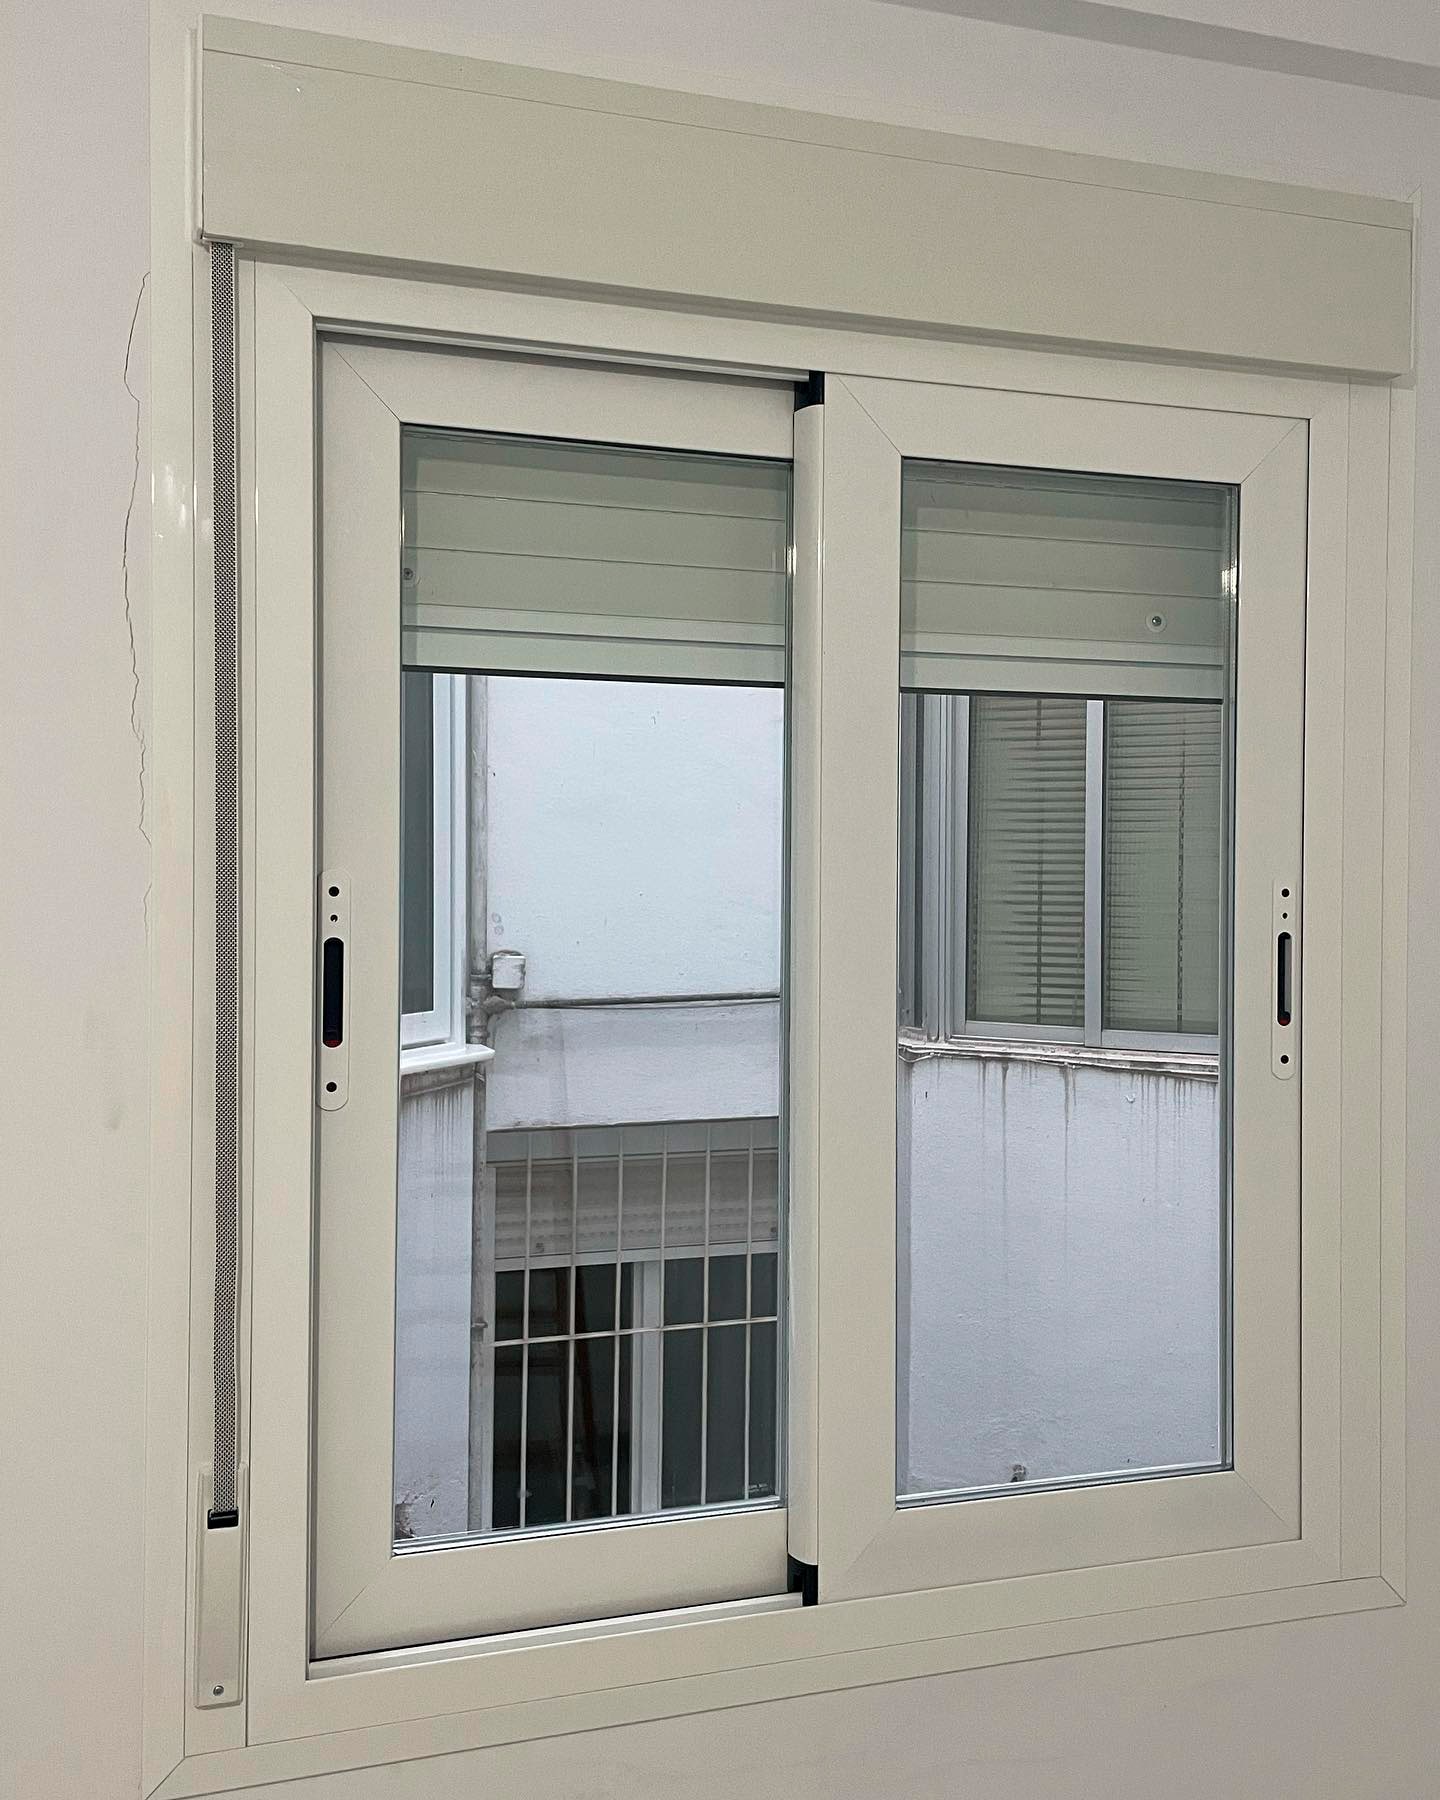 Ventana de aluminio blanco con persiana en dormitorio